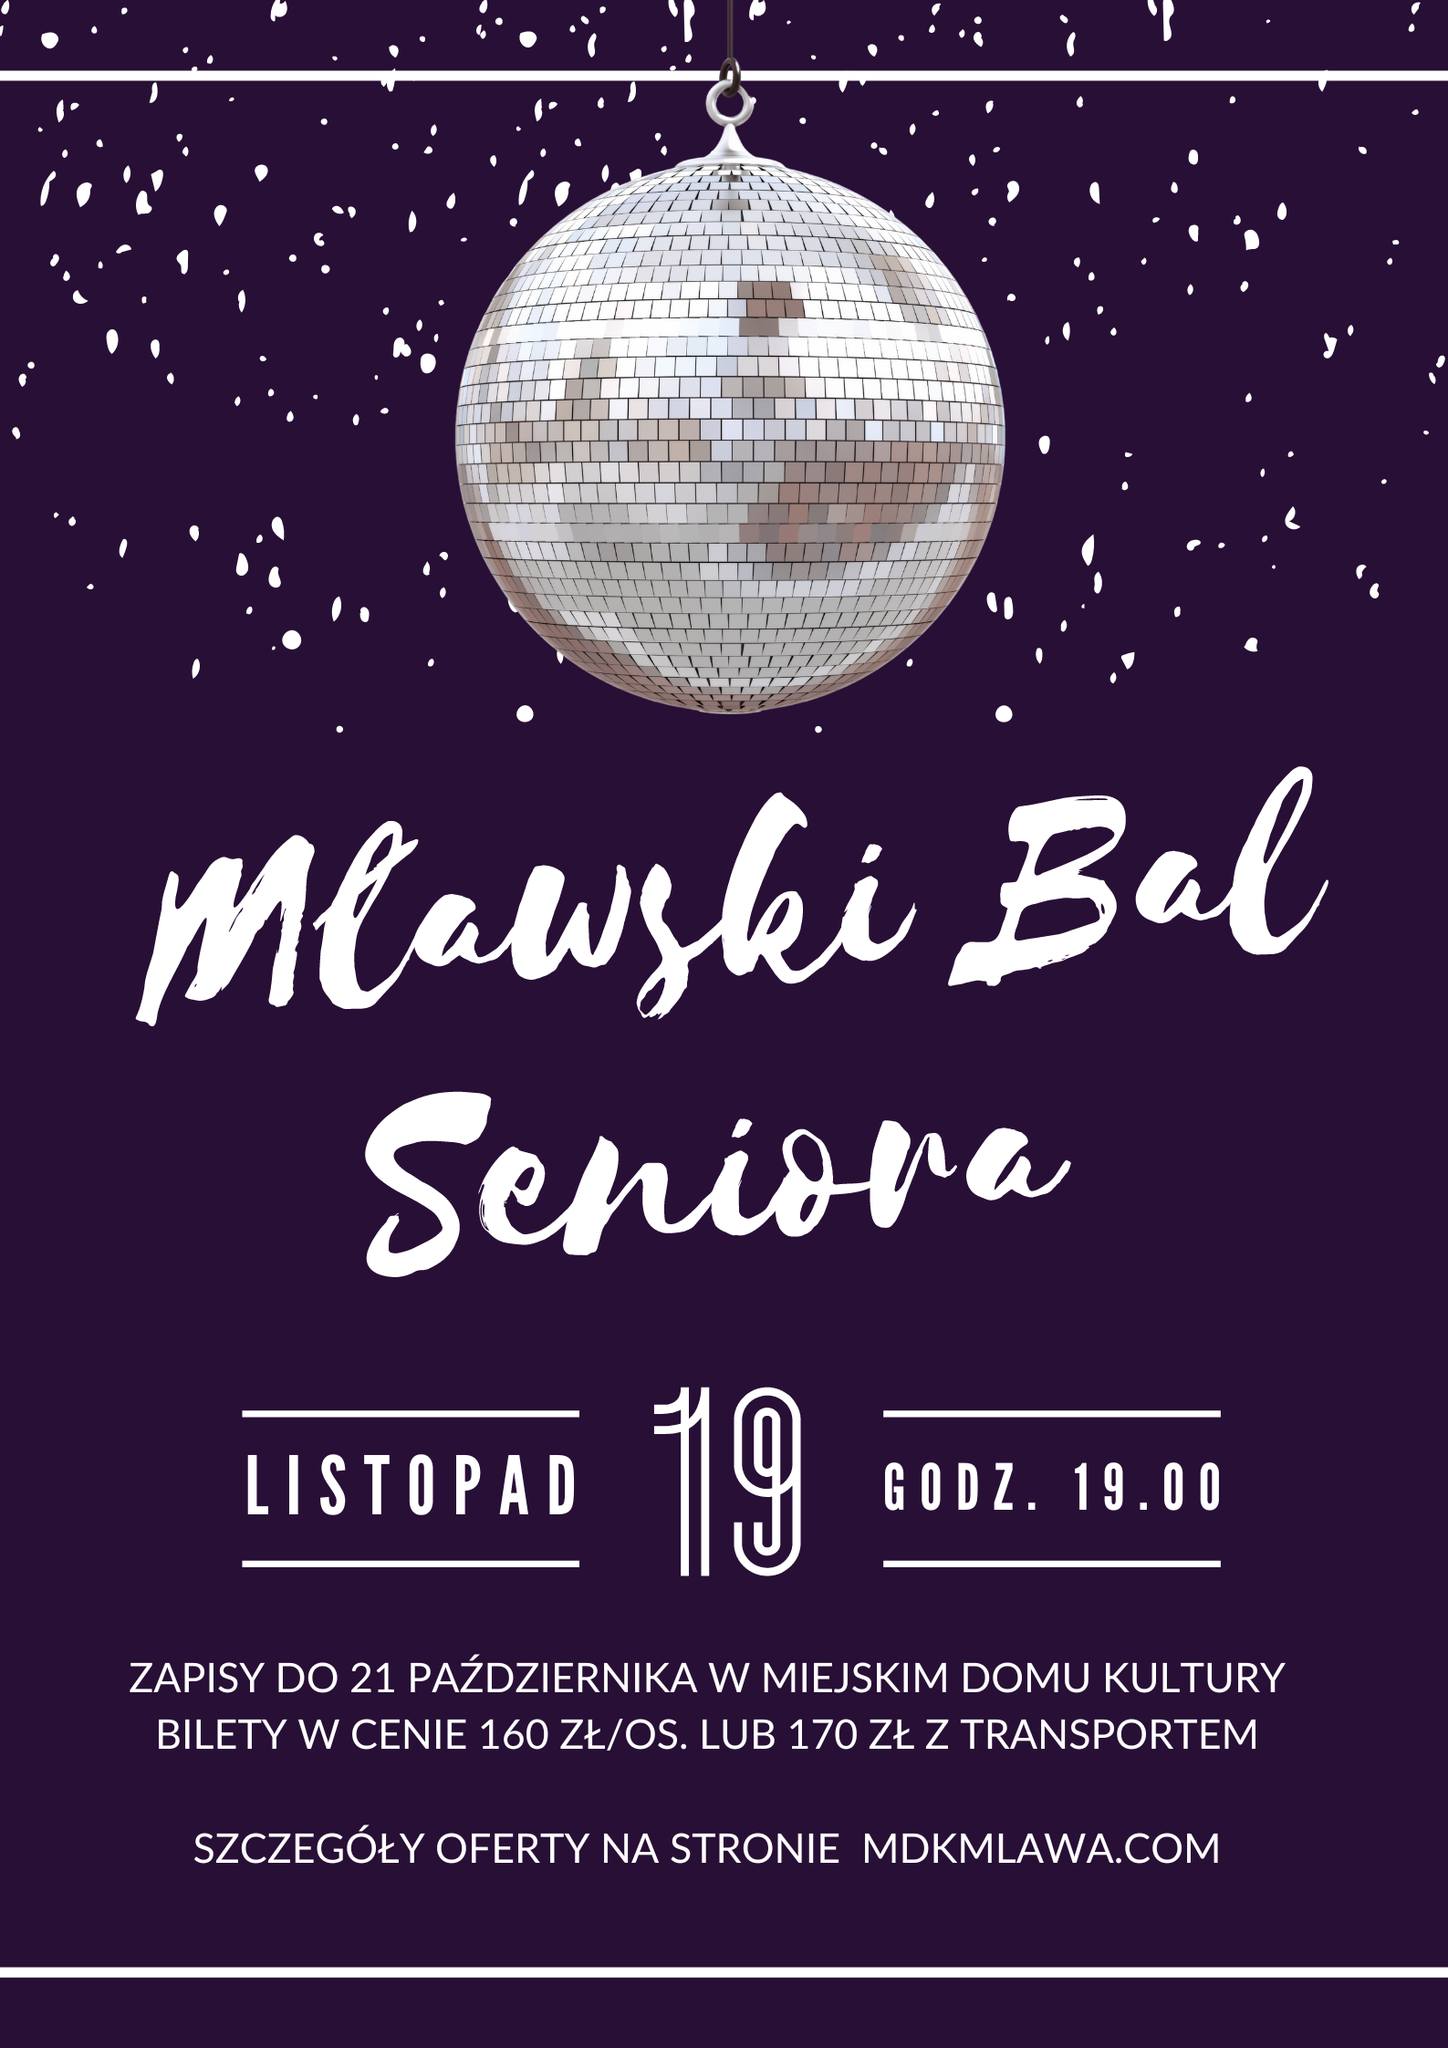 Mławski bal seniora.jpg 201